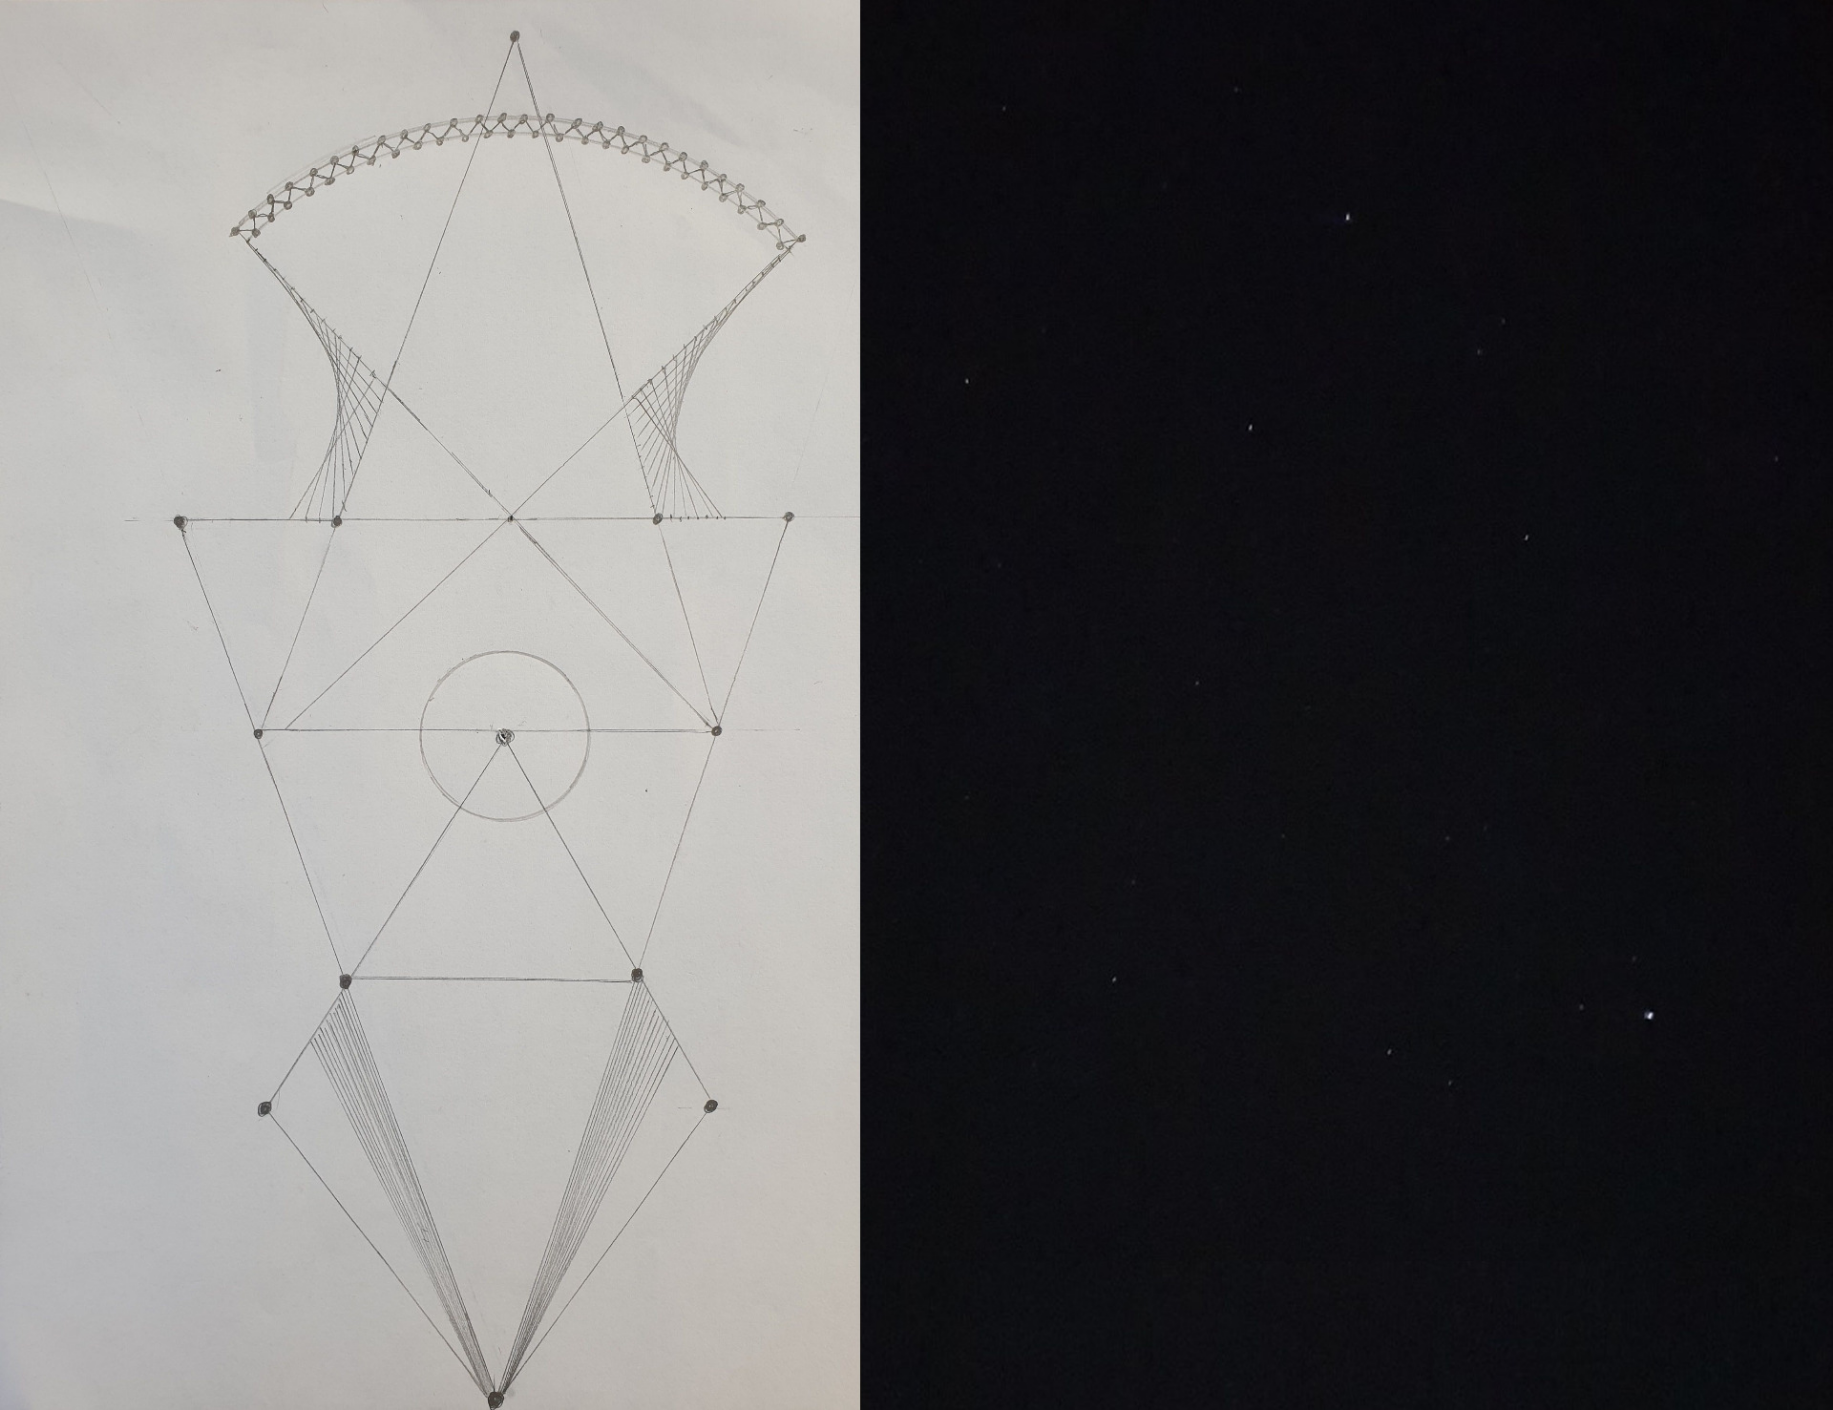 [url=https://gradini-fractale-geometrice.webnode.ro/_files/200000044-a3078a307c/13.jpg]Proiect de gradina fractala, desenata de mine incepand de la triunghiul isoscel
 inspirat din constelatia Triangulum si dezvoltata pe care am 
fotografiat-o din gradina mea. Există un triunghi compus din stele 
strălucitoare numit Triunghiul de Vara. Stelele componente sunt 
Vega-Altair-Deneb, prima fiind a cincea stea ca strălucire de pe întreg 
cerul.  Triunghiul de vară este aproximativ isoscel și se poate vedea și
 în alte anotimpuri: tomana, iarna seara și primăvara dimineața. Cea mai
 apropiată stea din triunghi este Altair, la 16 ani lumină, Vega fiind 
situată la 25 de ani lumină de noi.  Vega și Altair au nume arabe. Prima
 înseamnă „vulturul în zbor” iar a doua „pasărea”. Deneb se traduce 
„coada” fiind coada lebedei, constelația Cygnus.  Triunghiul de vară 
poate fi văzut mai mereu: la răsăritul și apusul Soarelui, primăvara în a
 doua jumătate a nopții, vara si toamna toată noaptea. [/url]